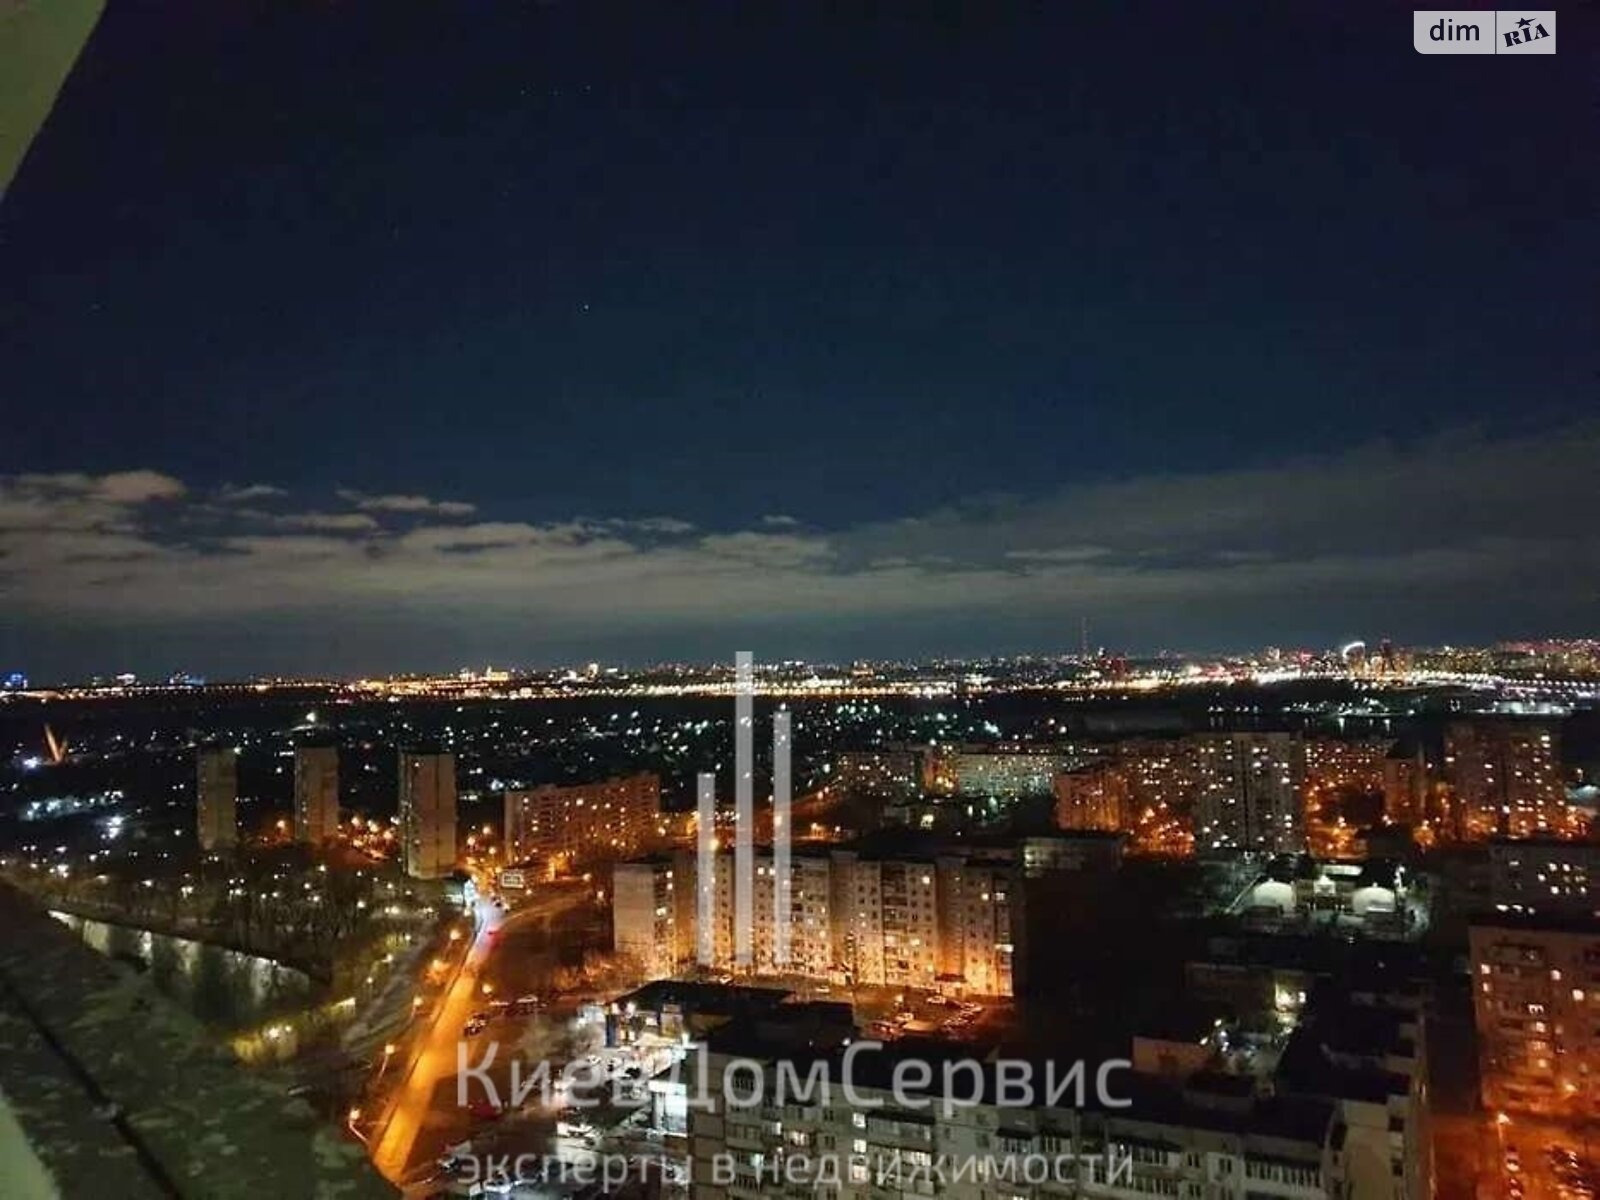 Продажа трехкомнатной квартиры в Киеве, на ул. Николая Кибальчича 2, фото 1